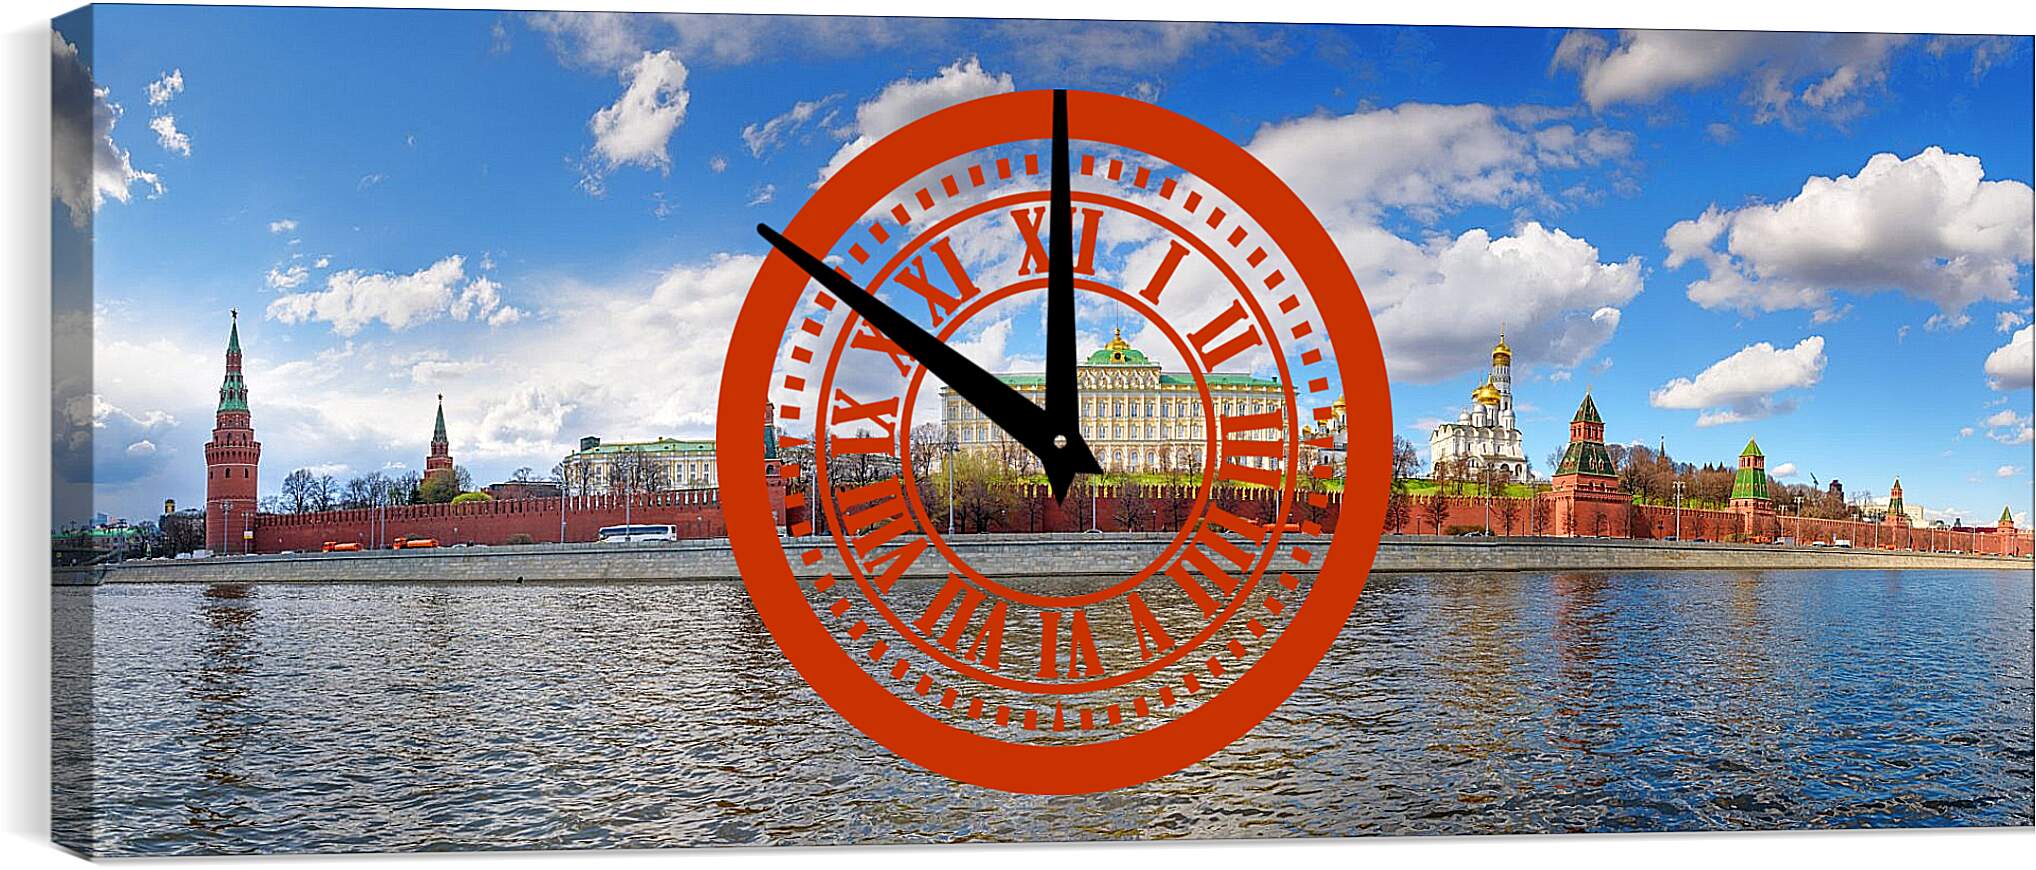 Часы картина - Вид Московского Кремля с Софийской набережной